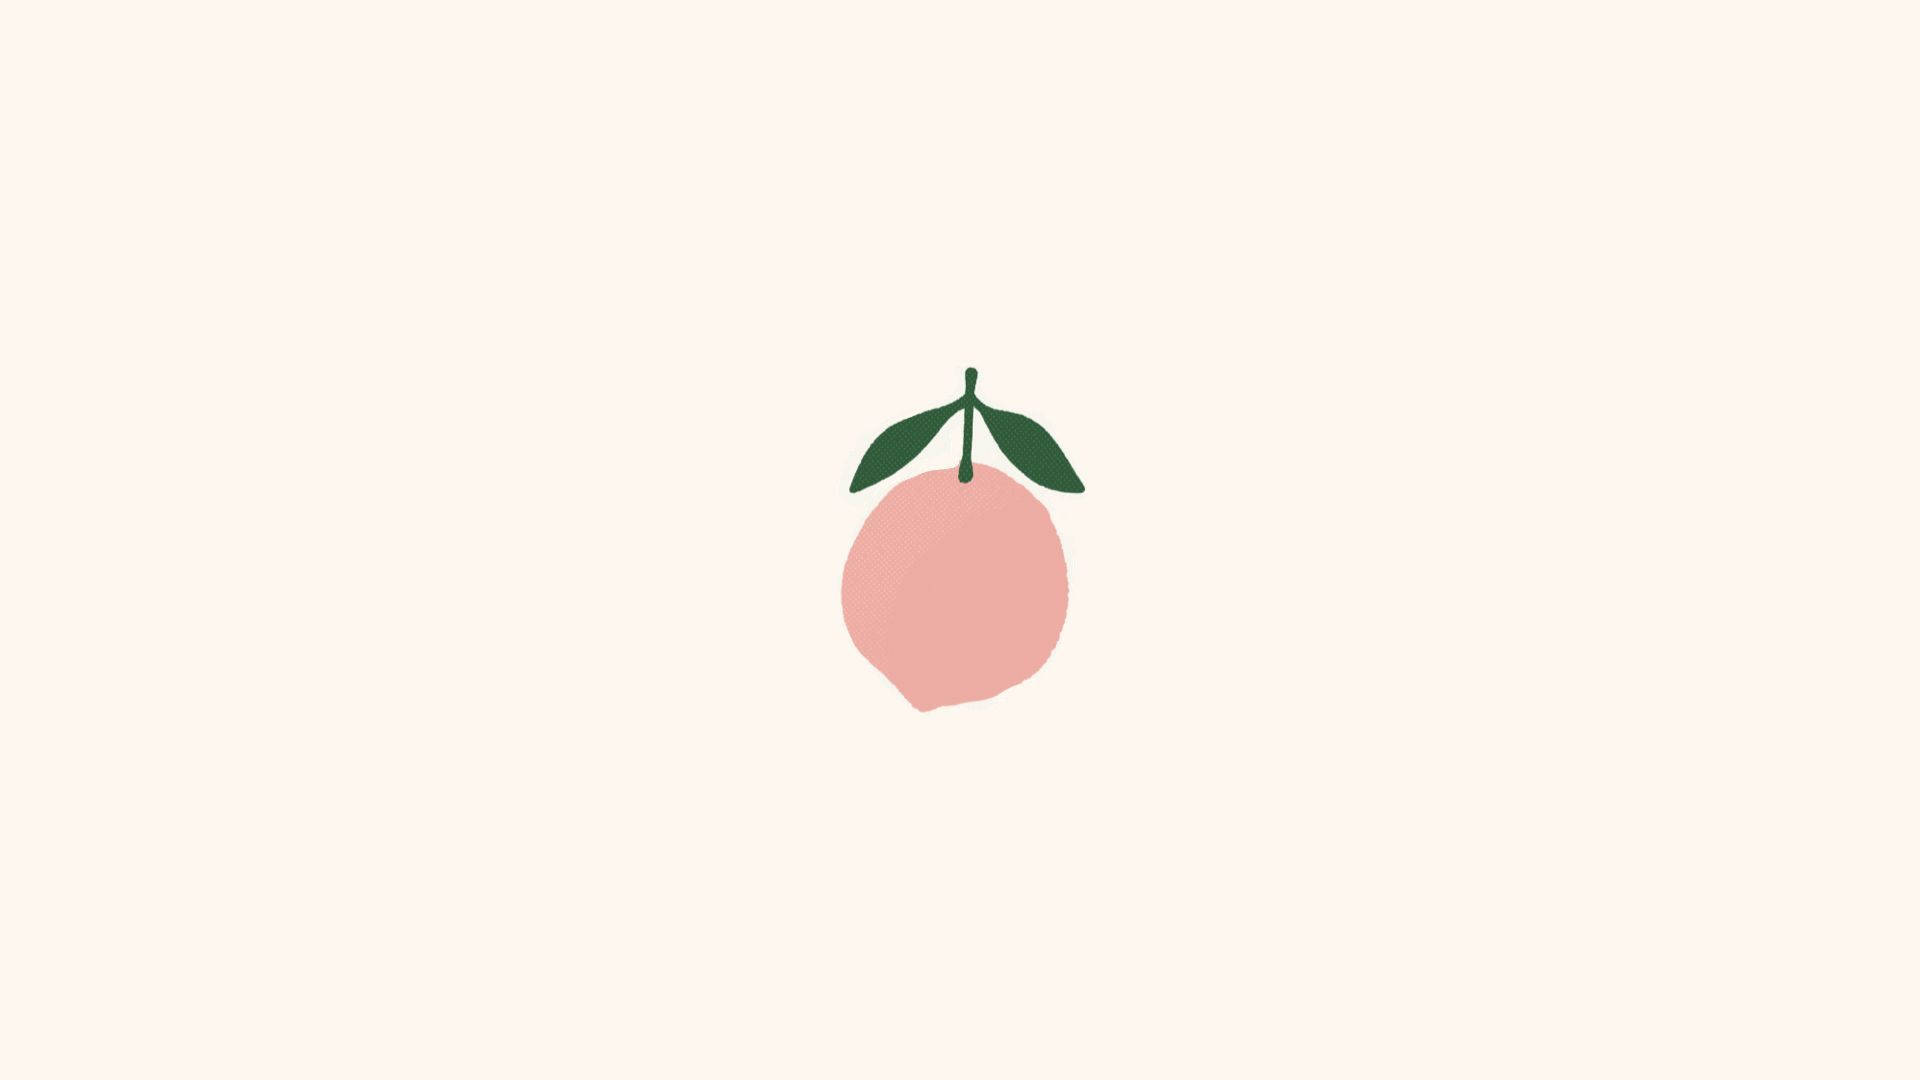 Peach Aesthetic Fruit Illustration Wallpaper